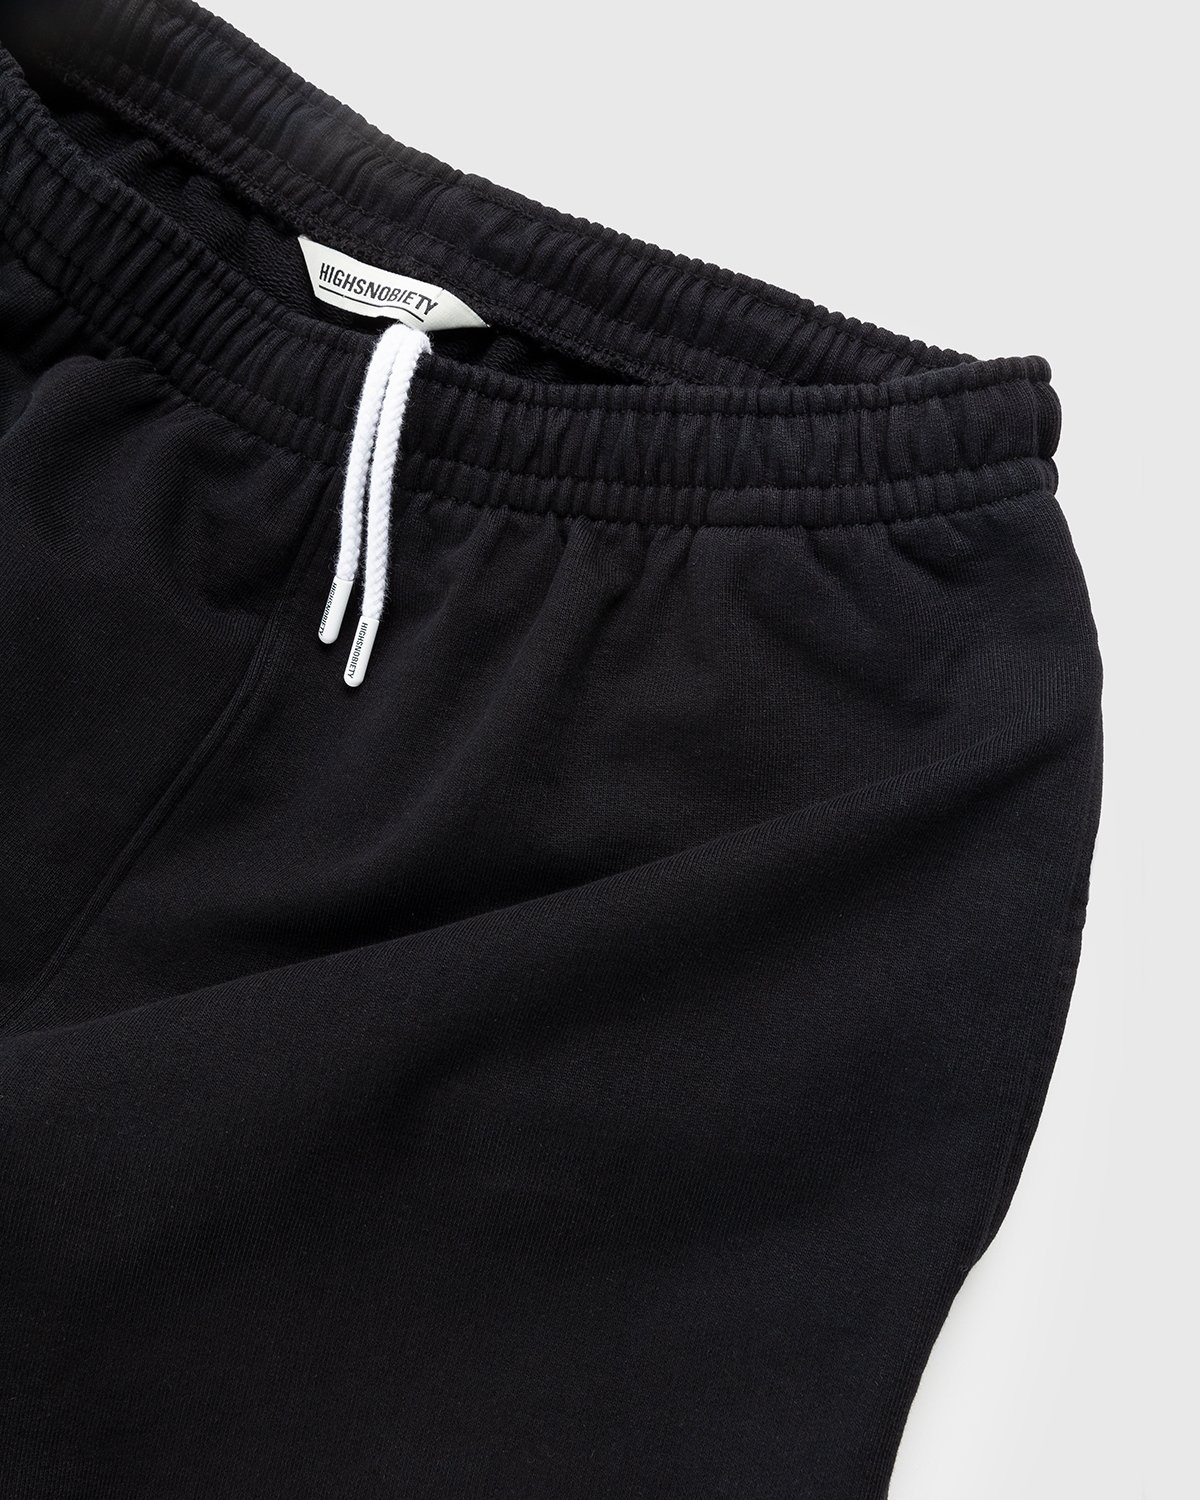 Highsnobiety – Staples Shorts Black - Sweatshorts - Black - Image 5